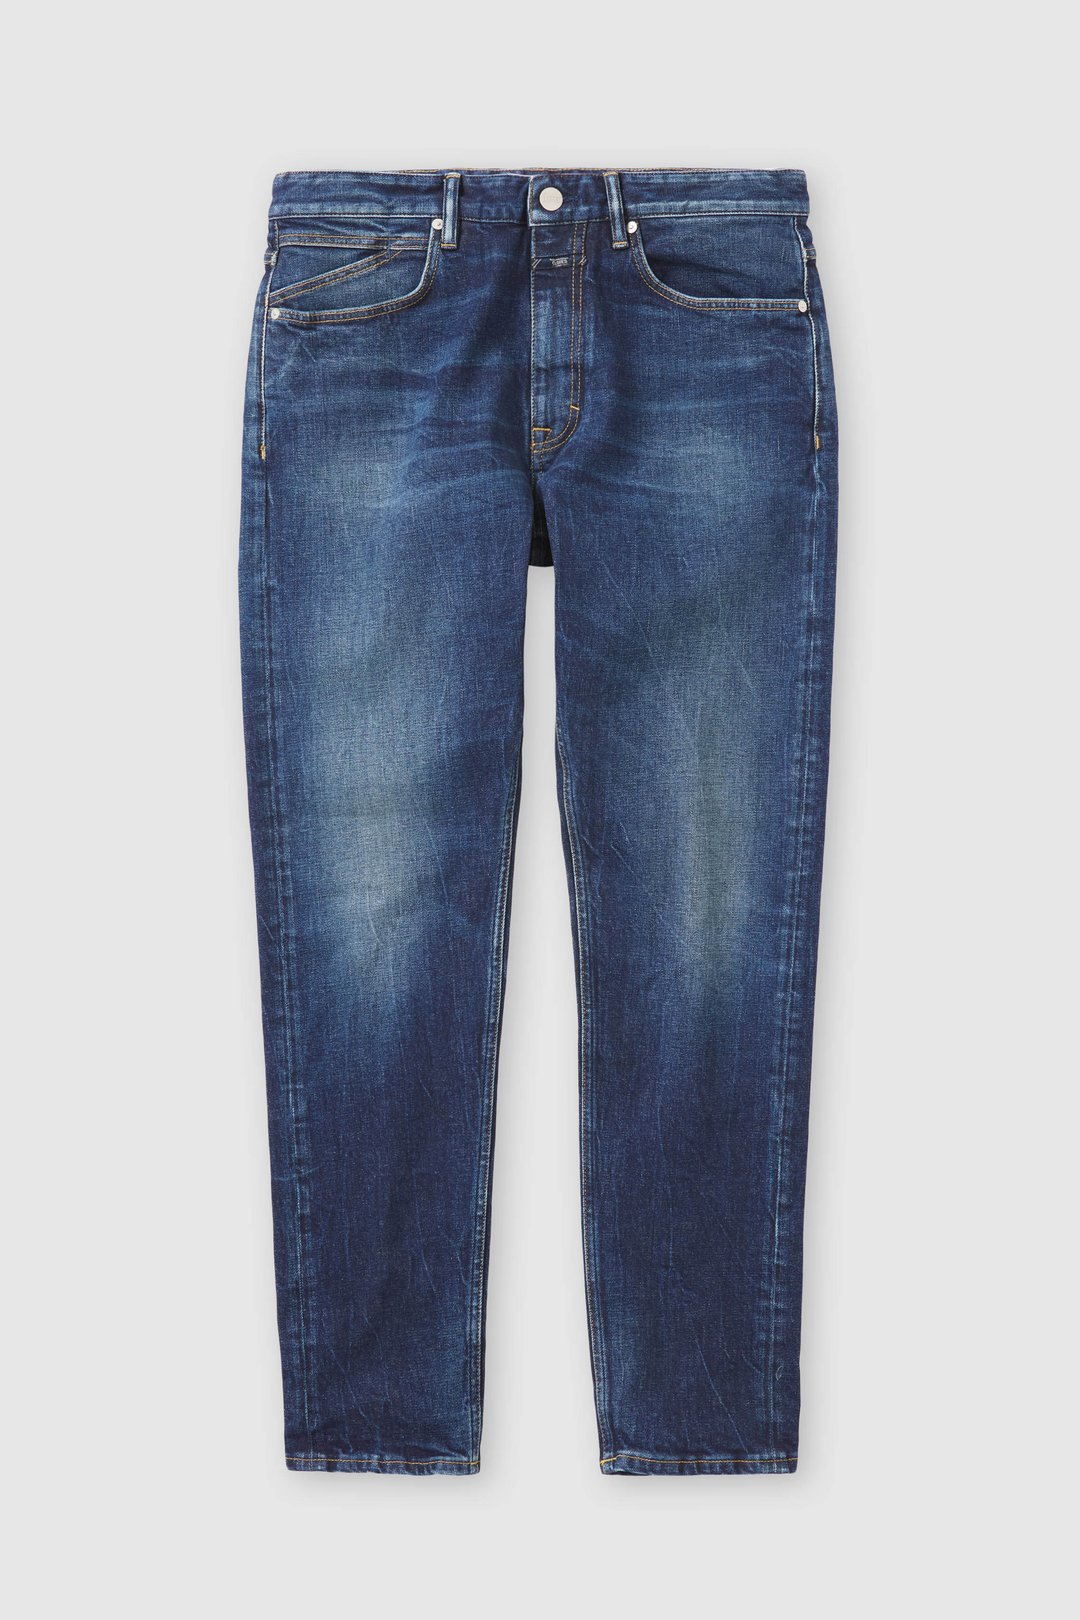 Jeans & Pants | Sale ❗❗Mens Denim Jeans | Freeup